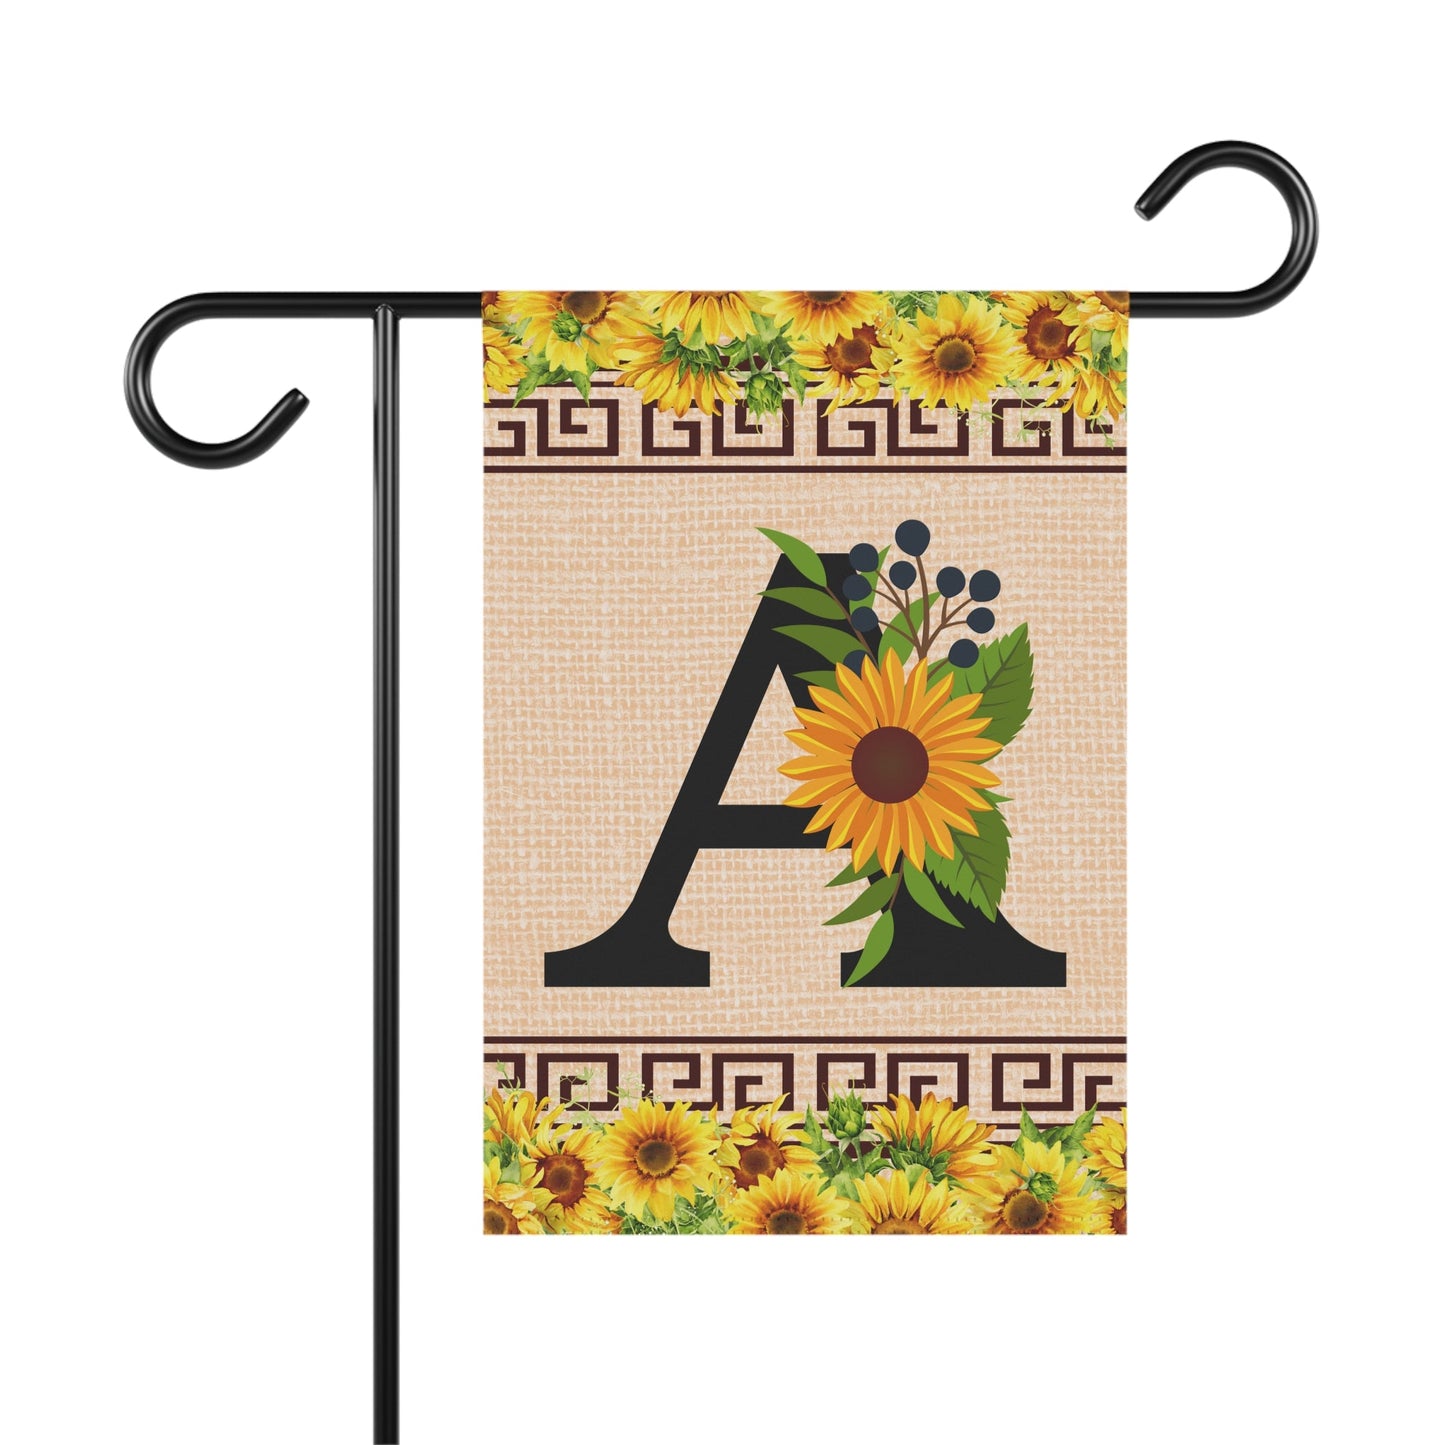 Elegant Sunflower Design Garden Flag with A-Z Letter Variations - Zealous Christian Gear - 2